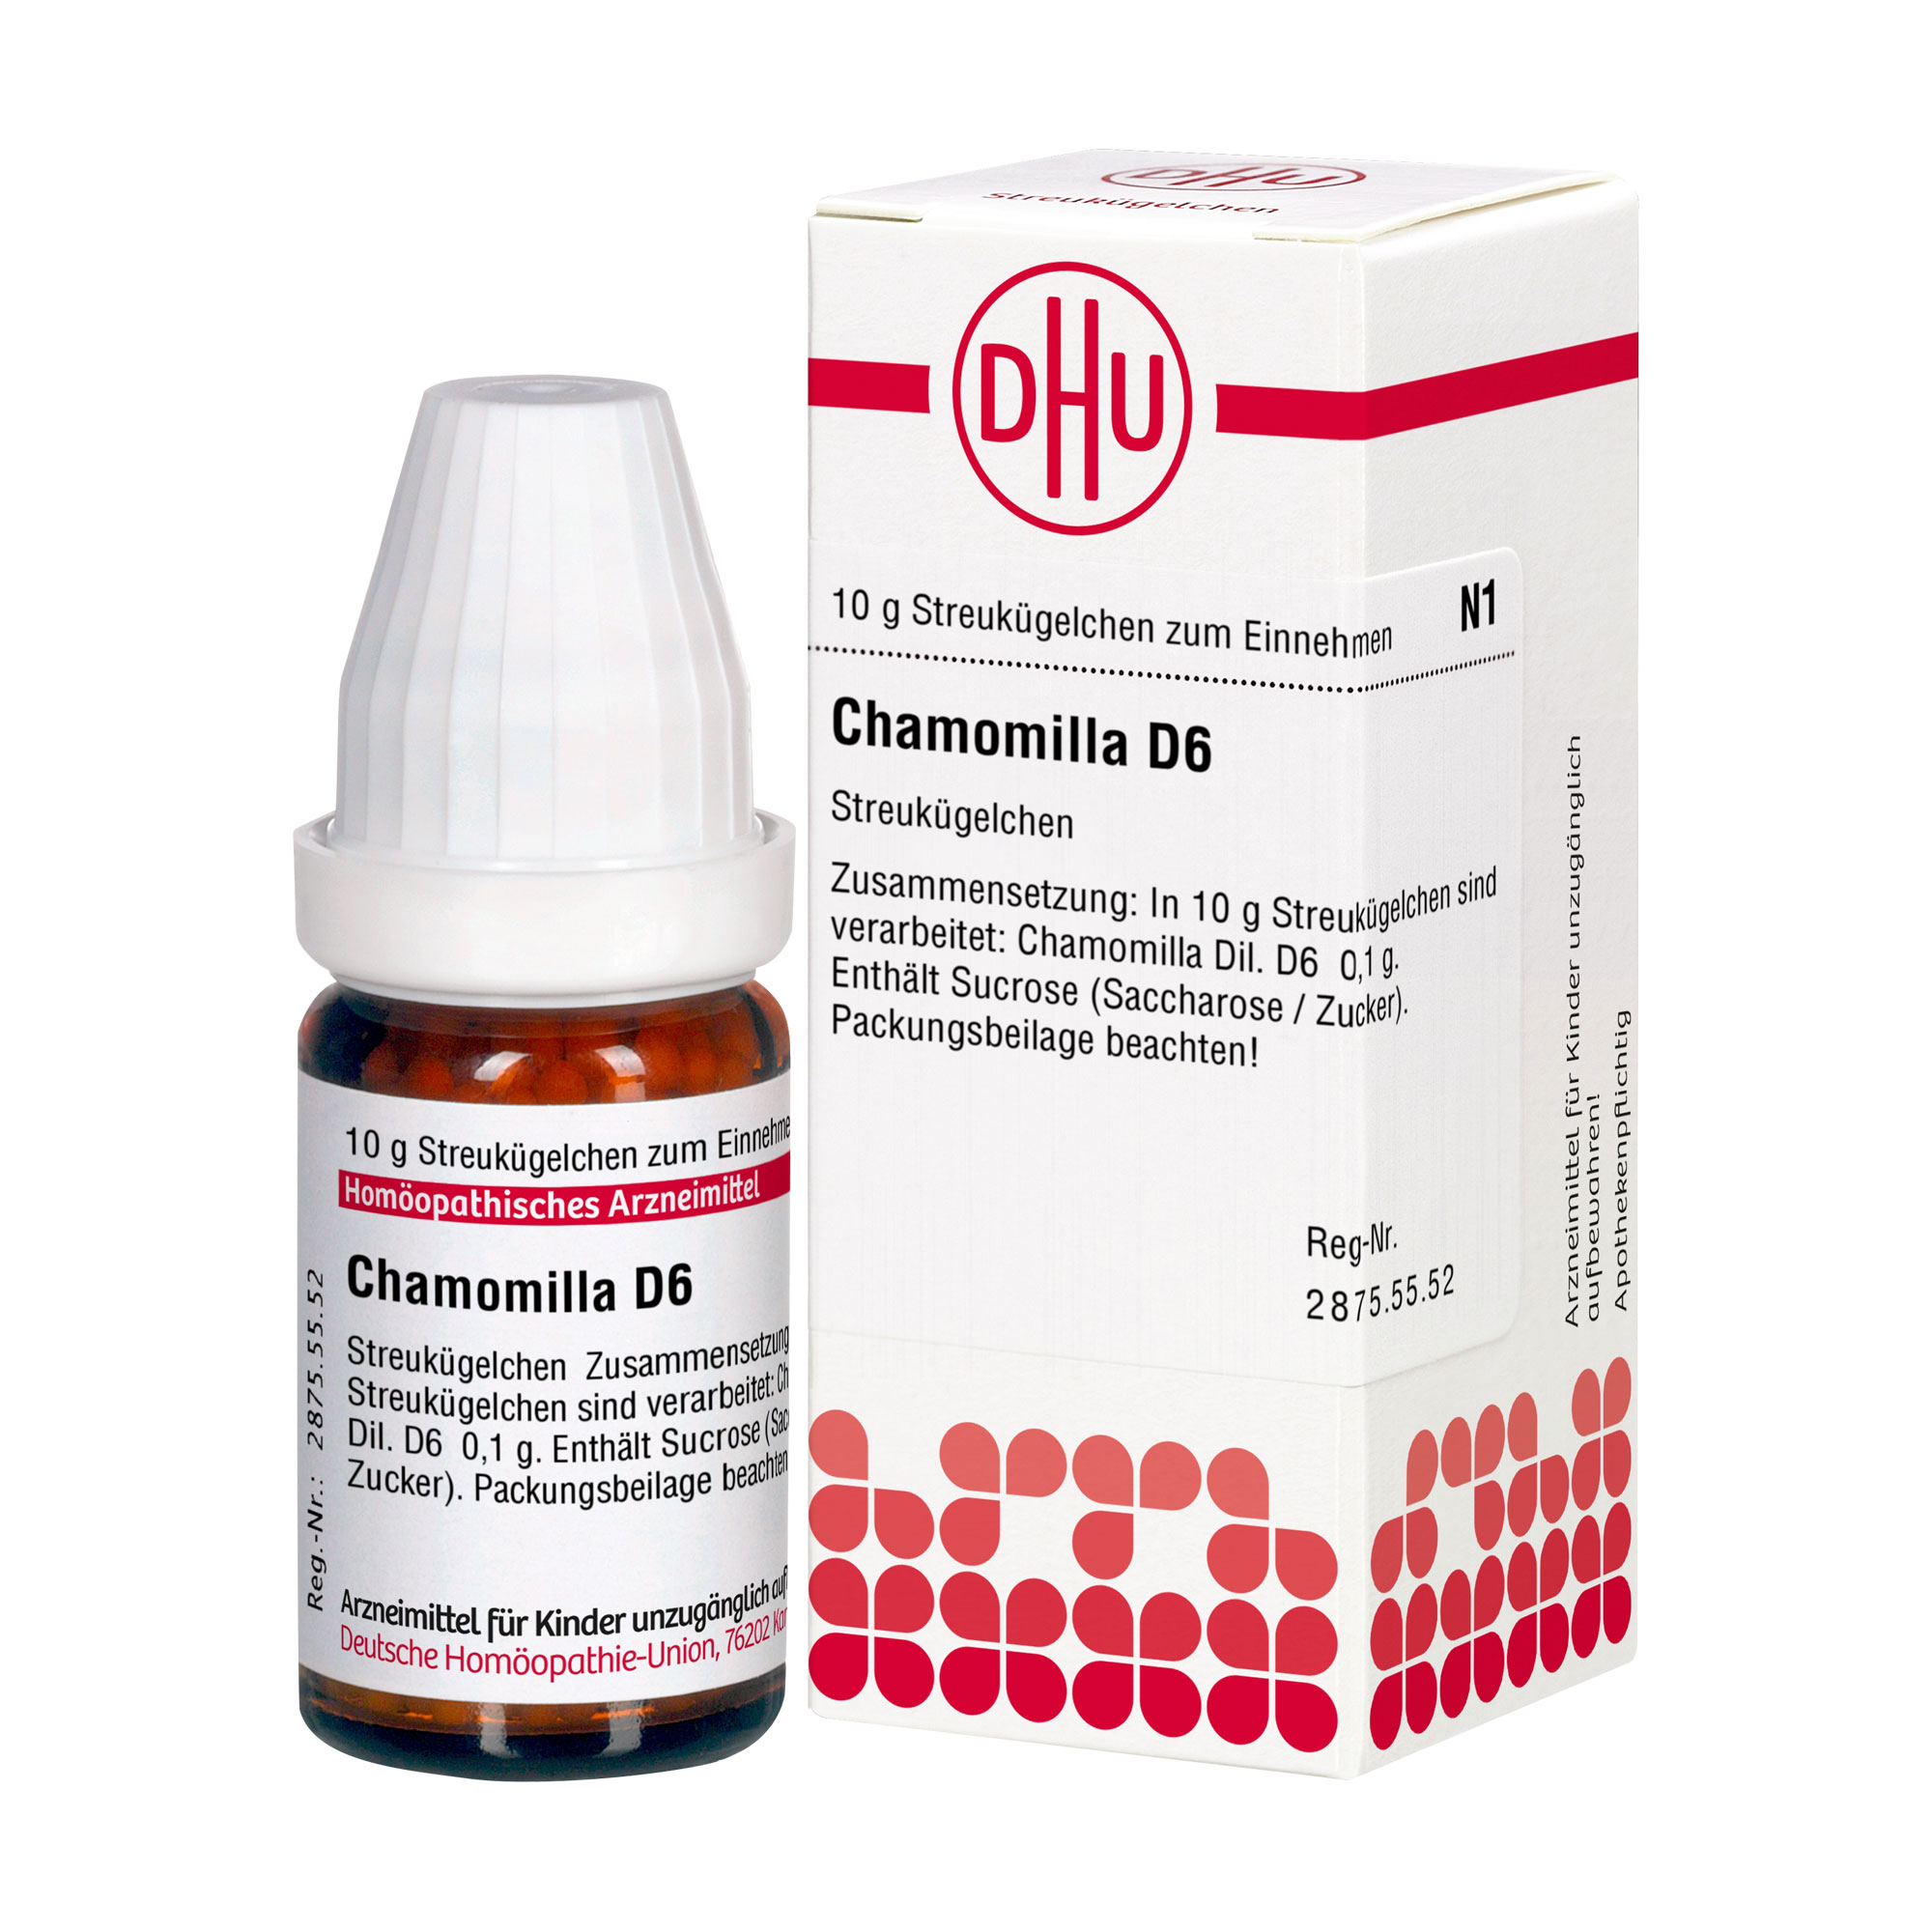 Homöopathisches Arzneimittel. Mit Chamomilla Dil. D6.